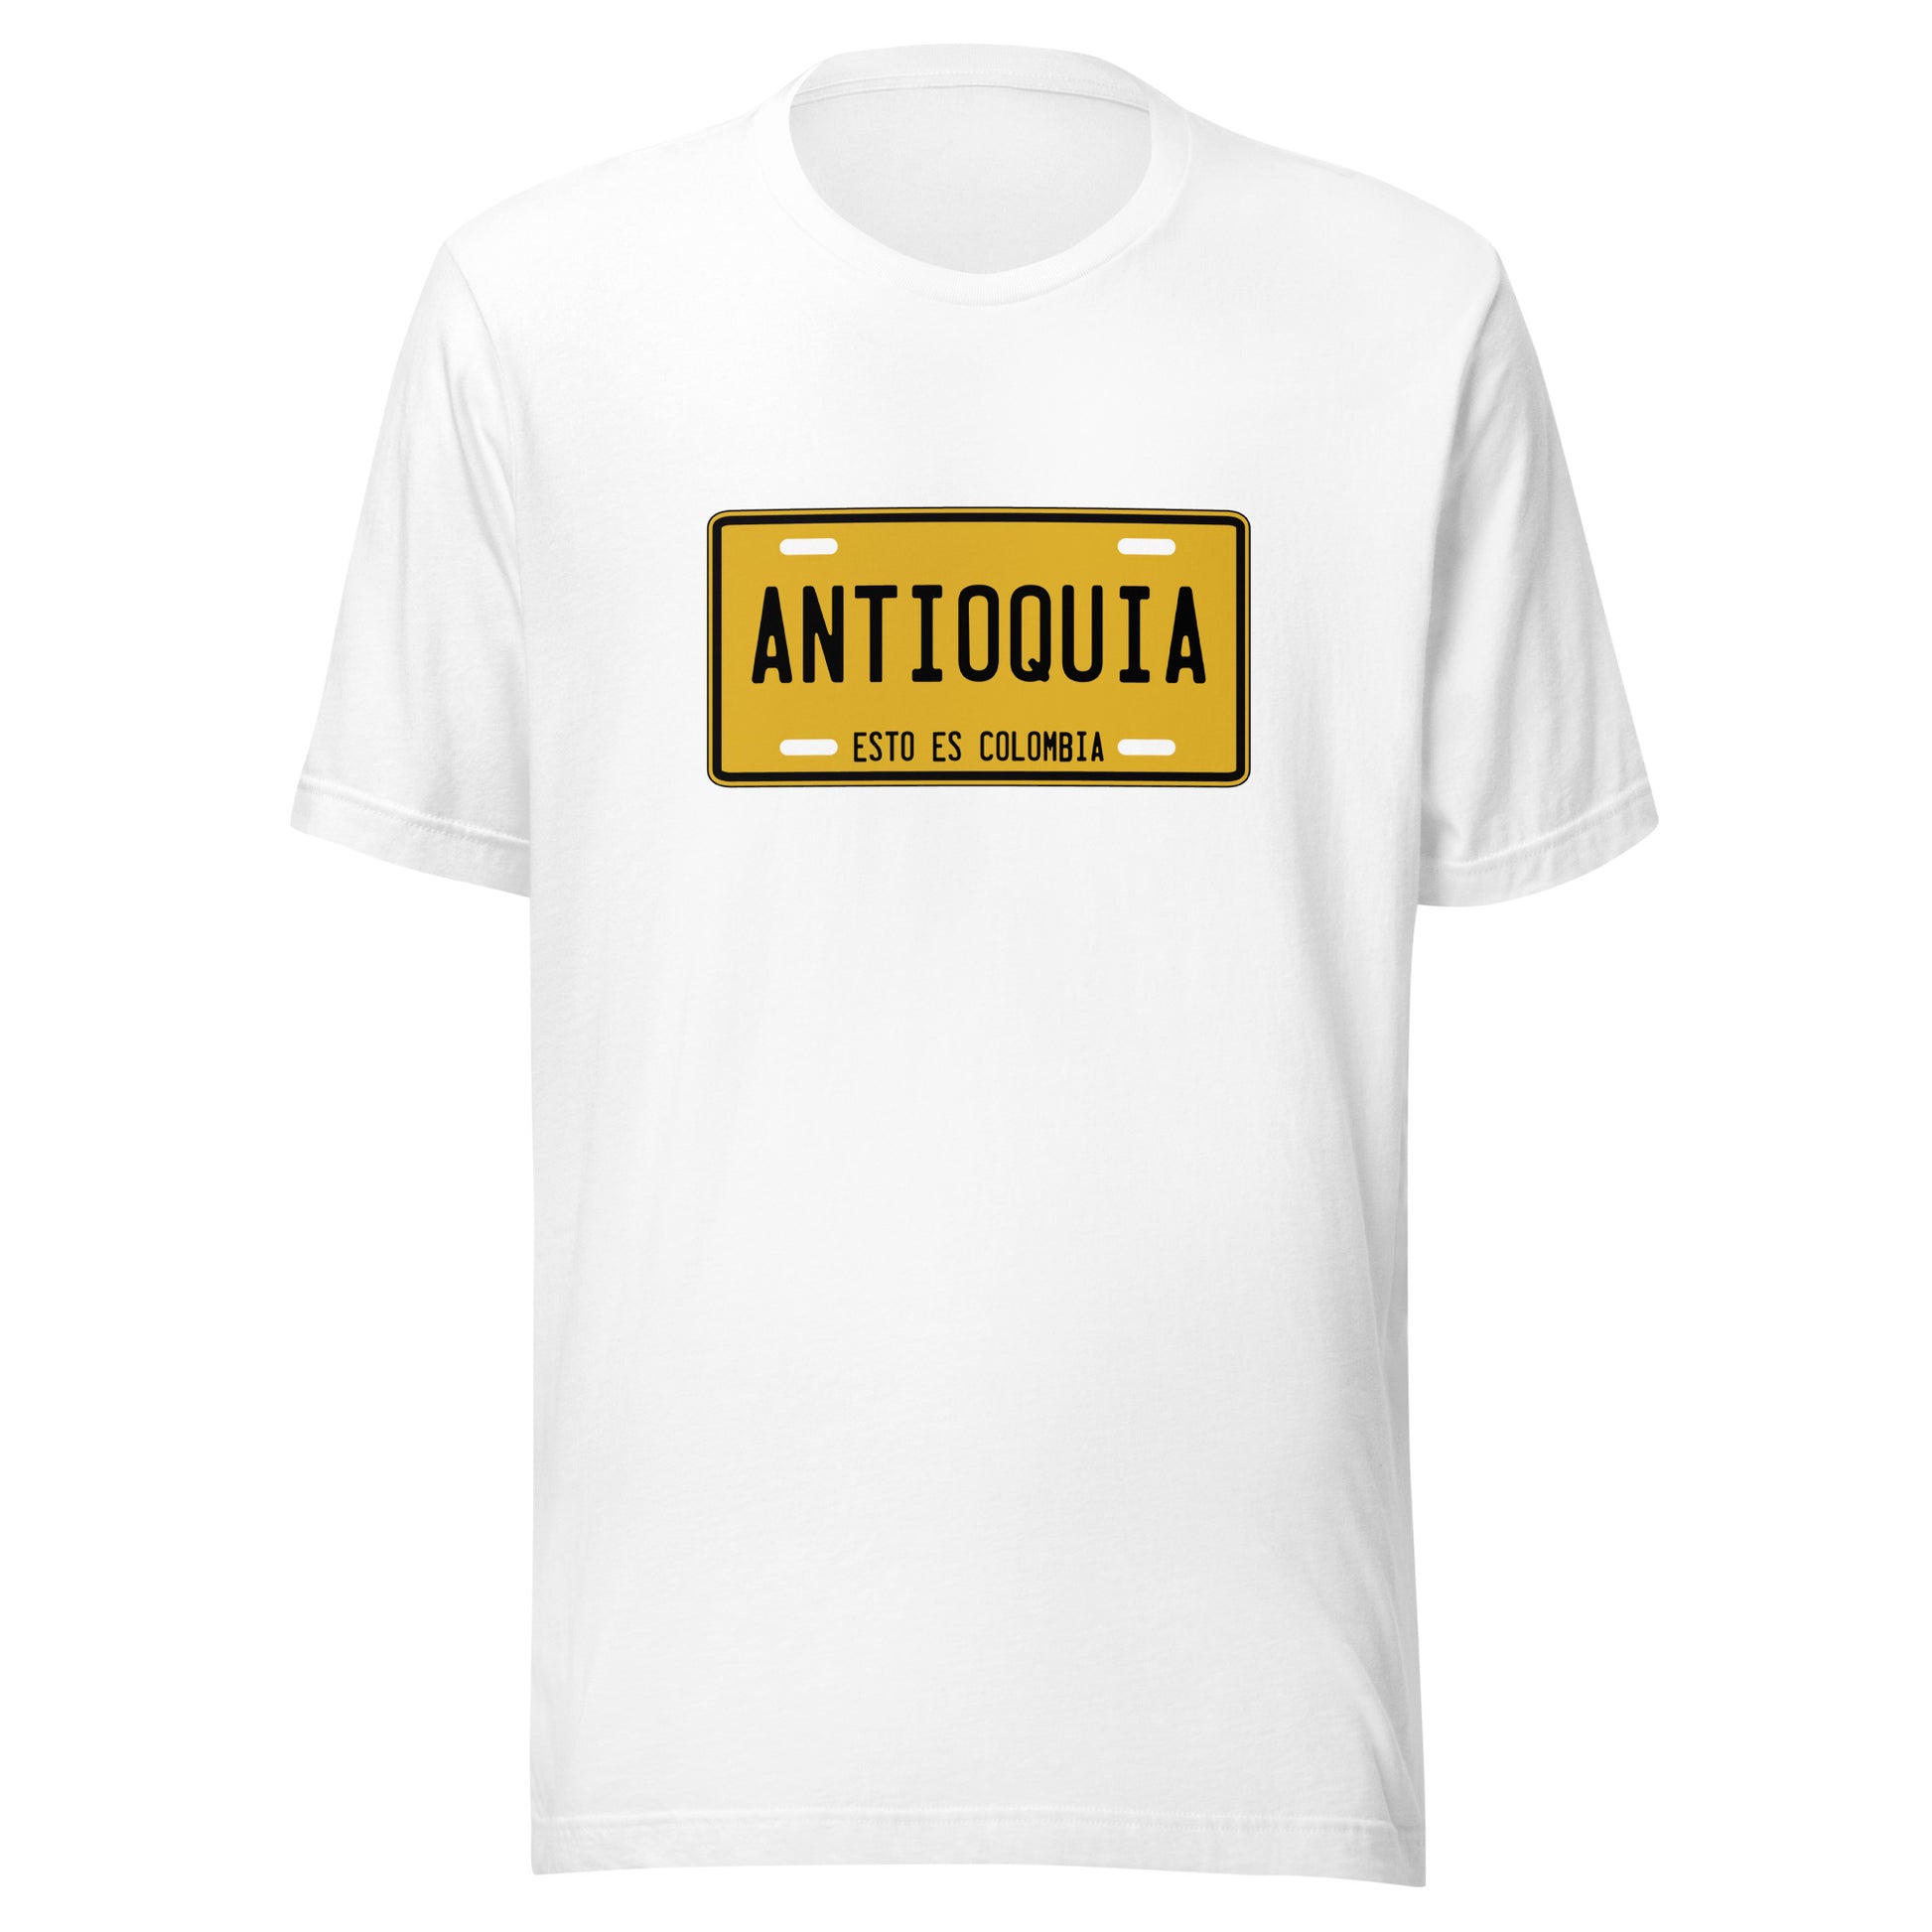 Muestra tu orgullo colombiano con la Camiseta Antioquia Esto es Colombia. Diseñada con los mejores materiales y un estampado duradero.